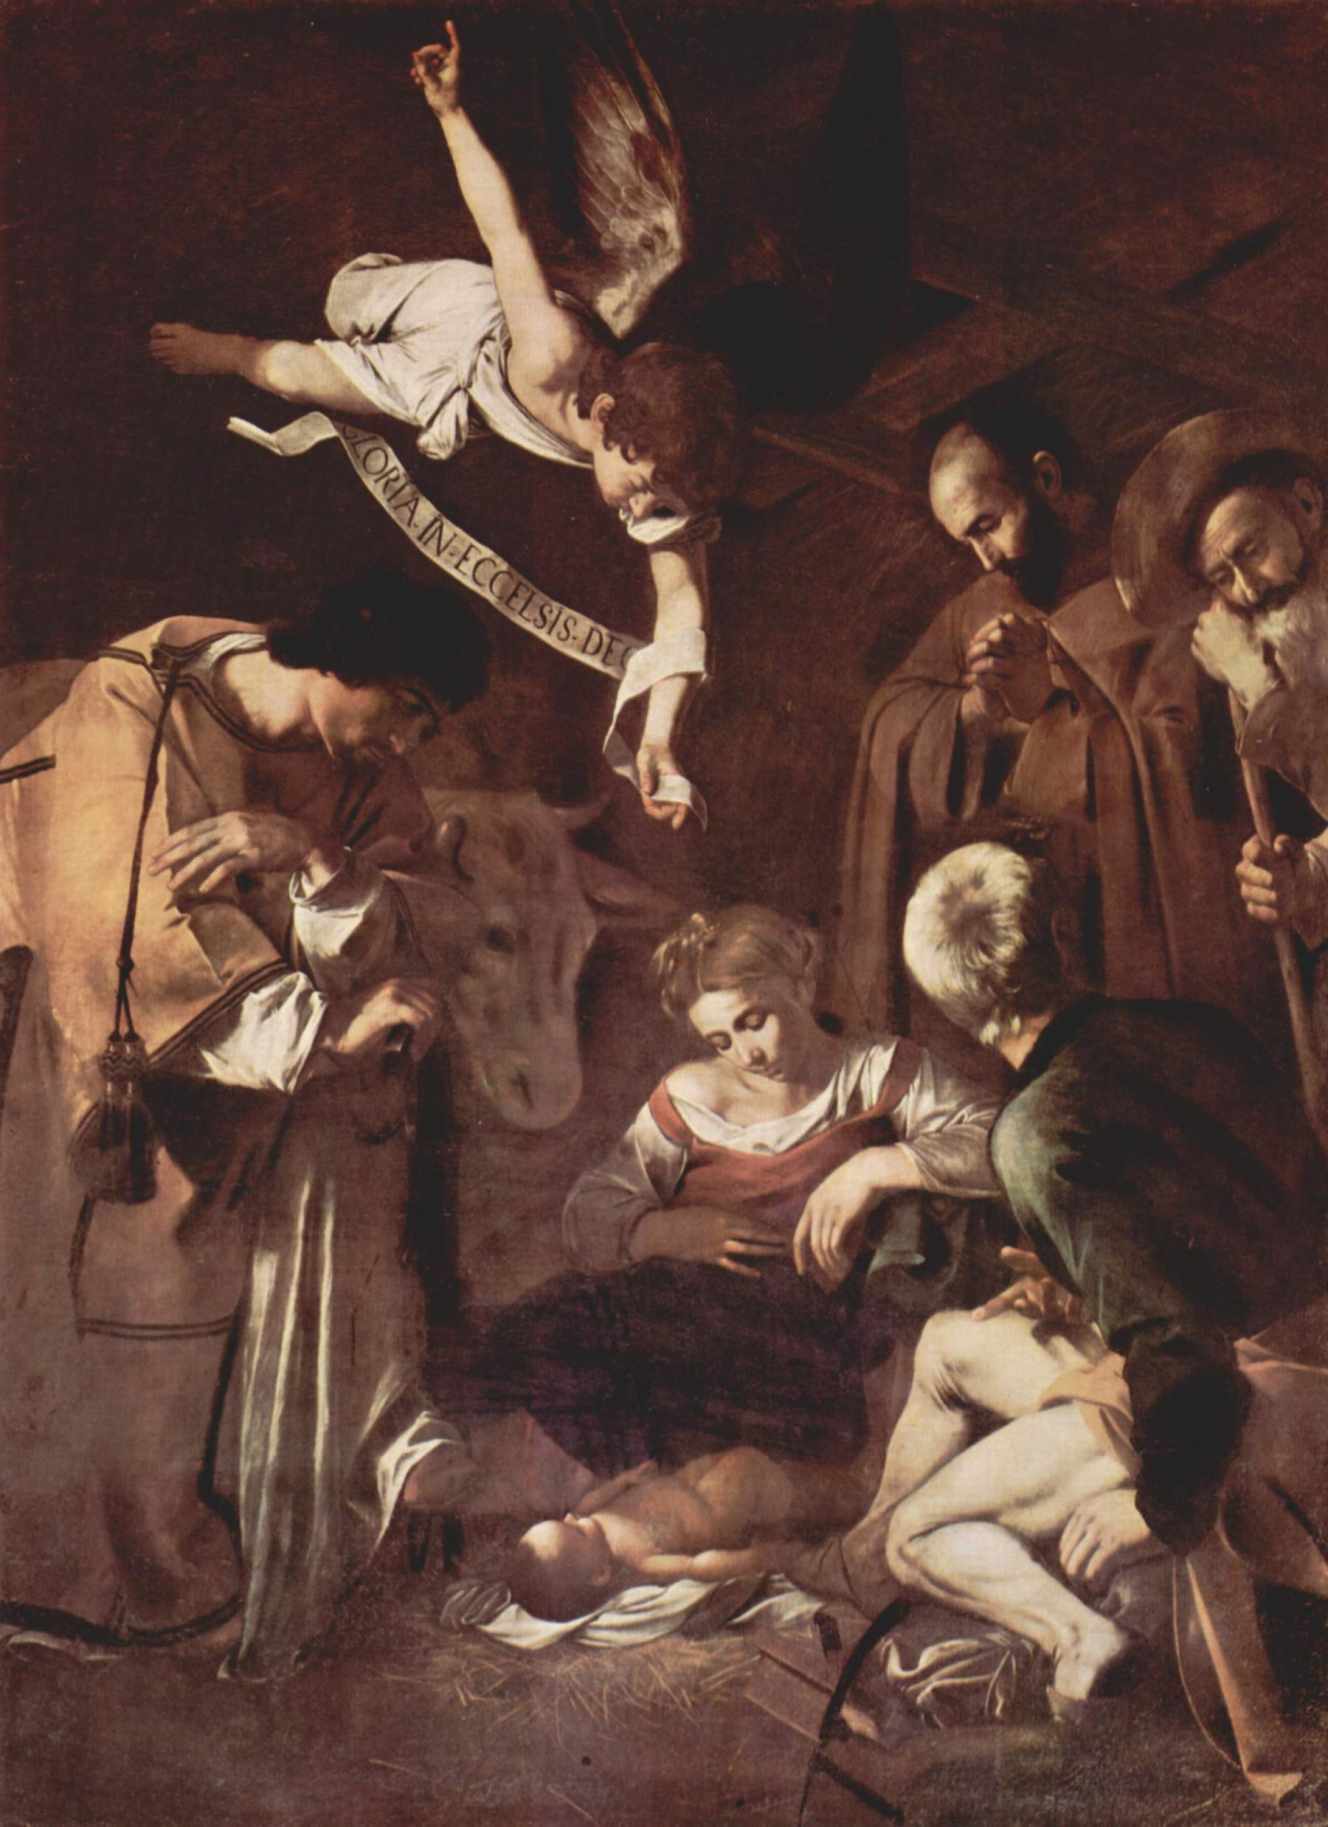 ꧁ Michelangelo Merisi da Caravaggio dit Le Caravage, c. 1609 ꧂